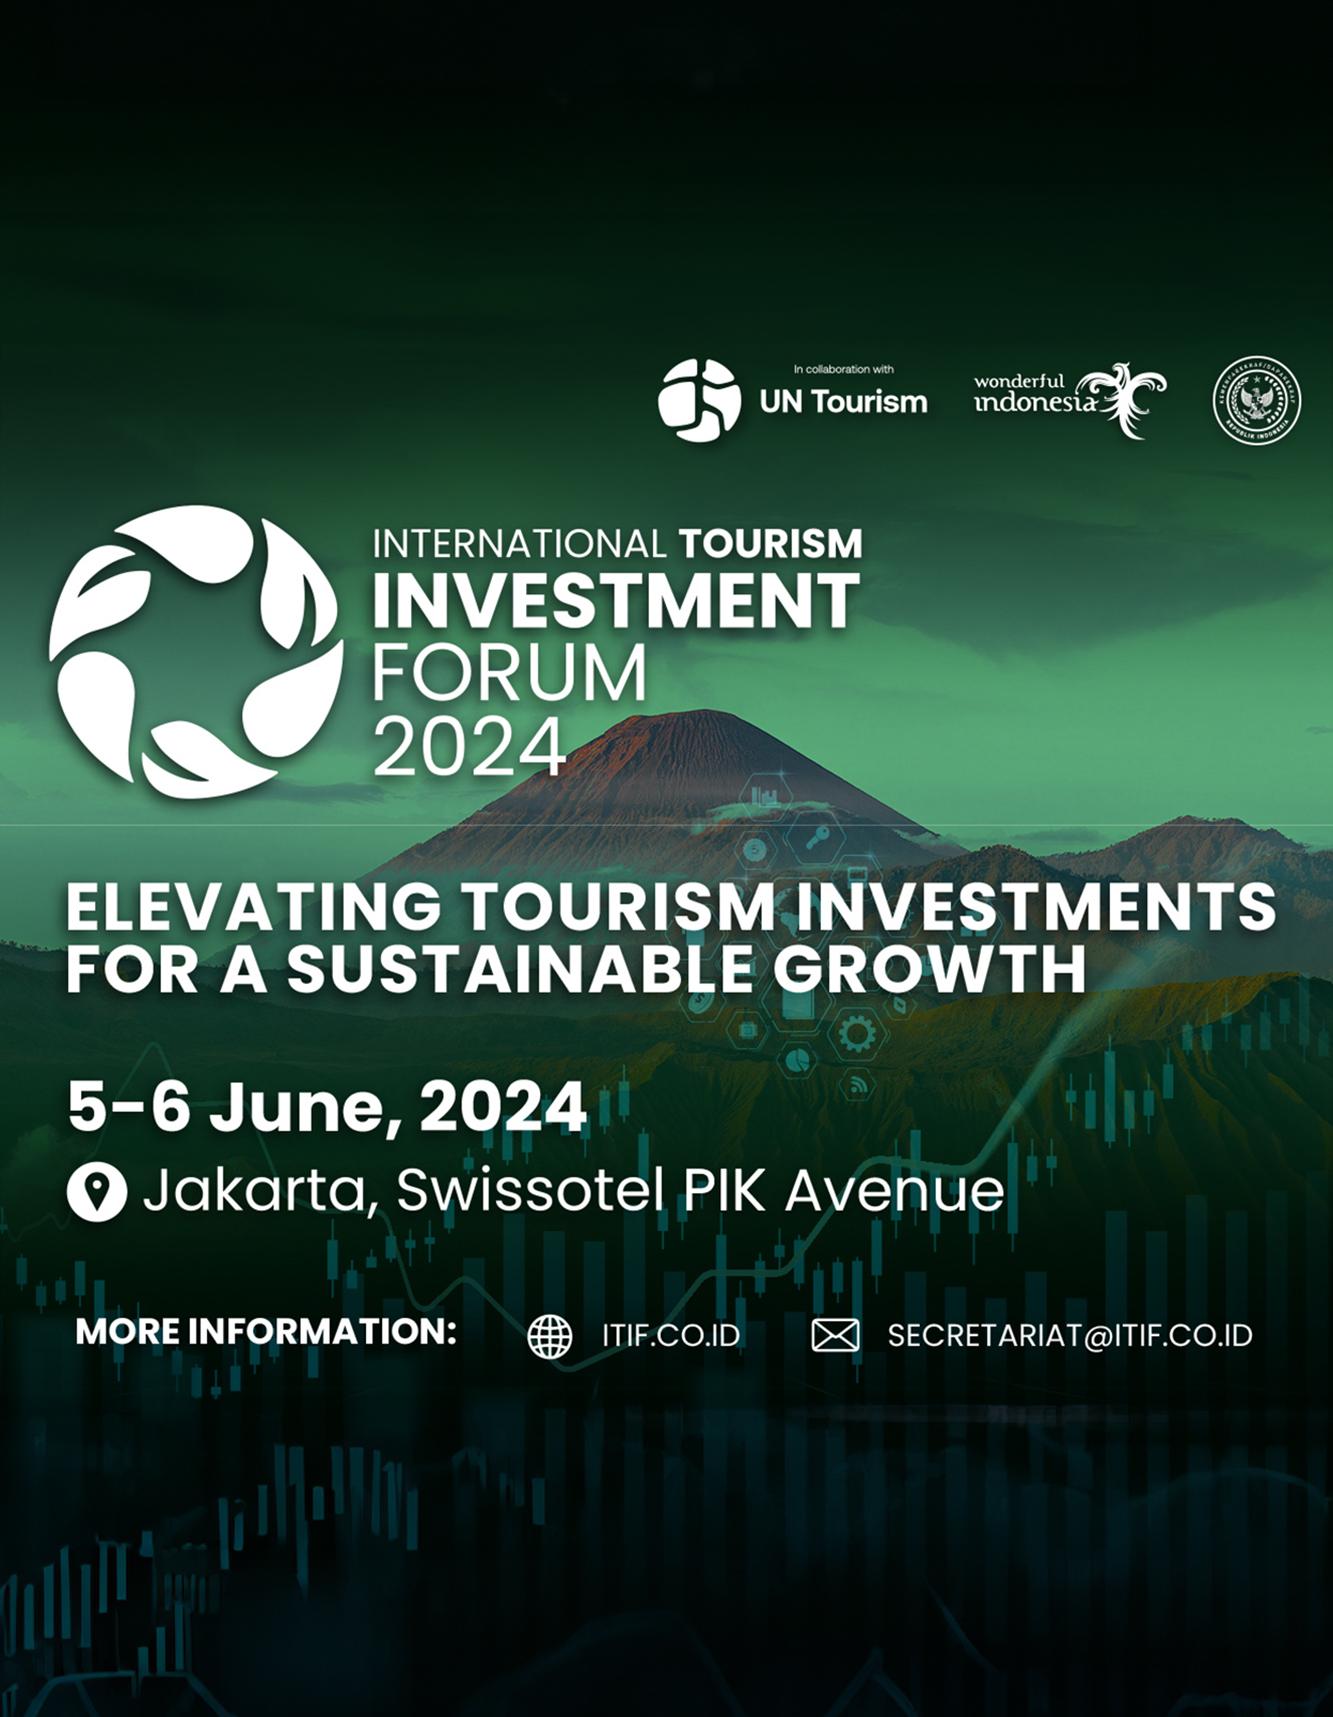 Investment Forum 2024